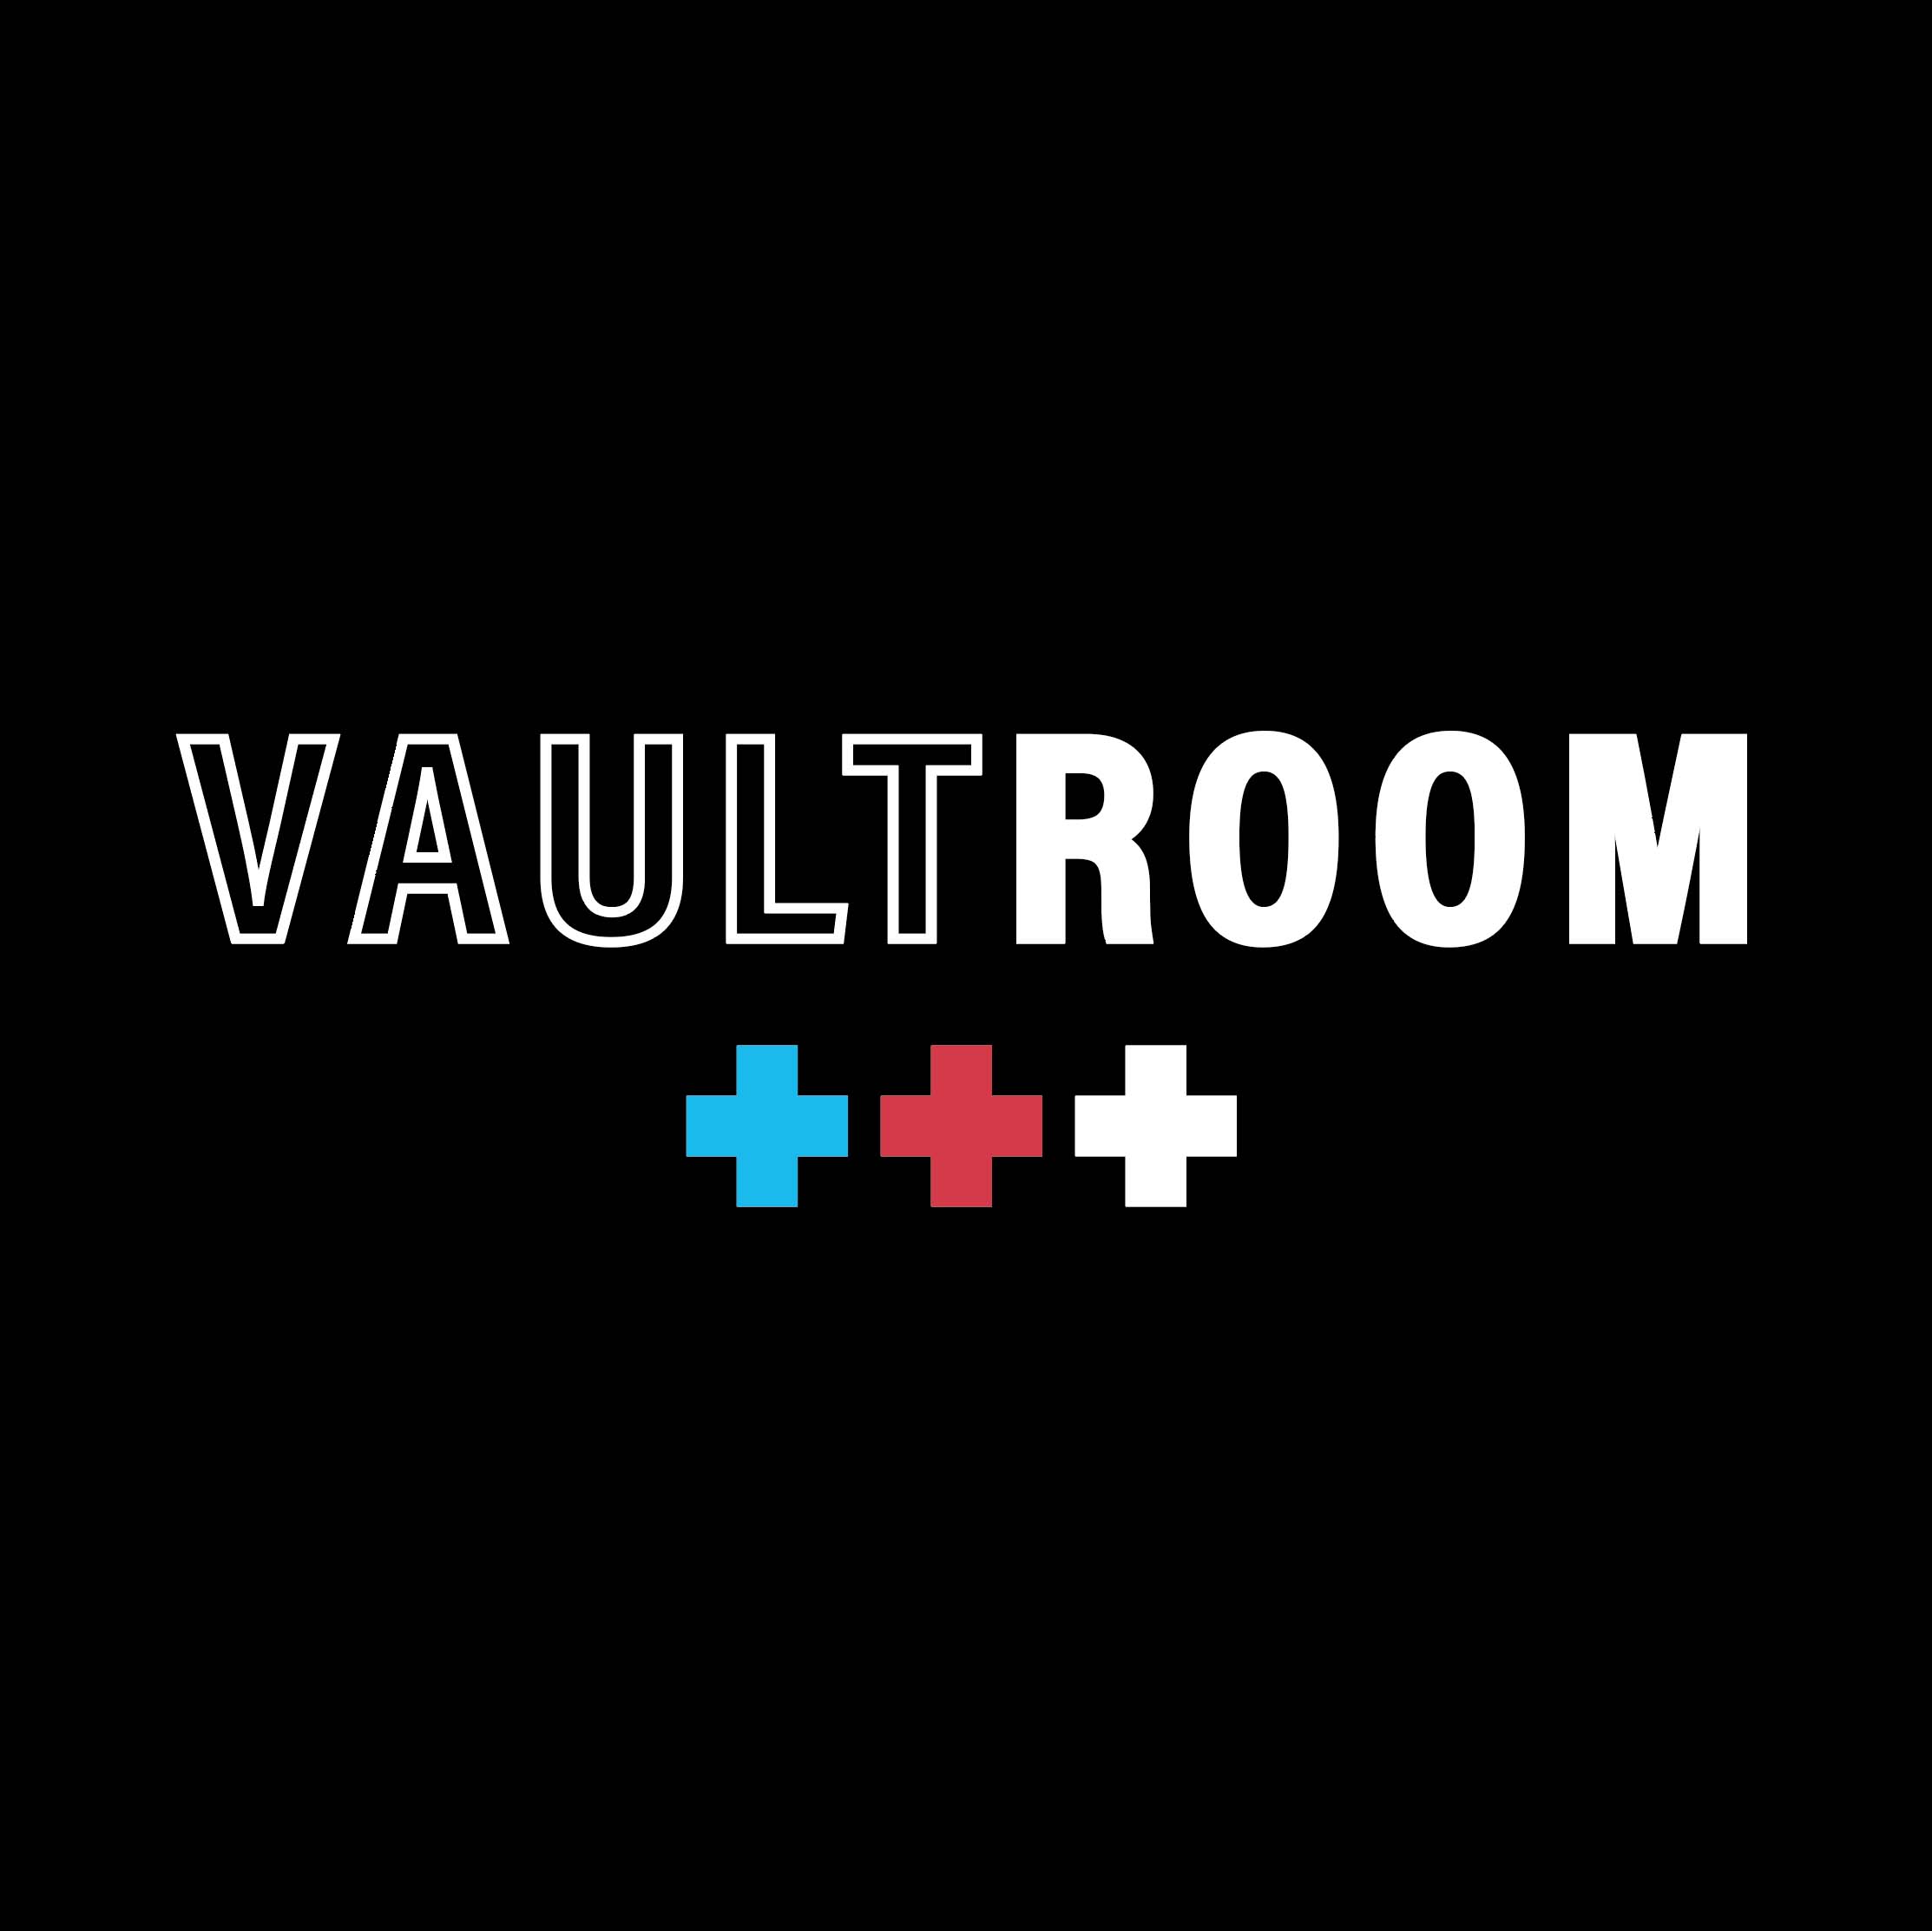 vaultroom × Cheeky – VAULTROOM